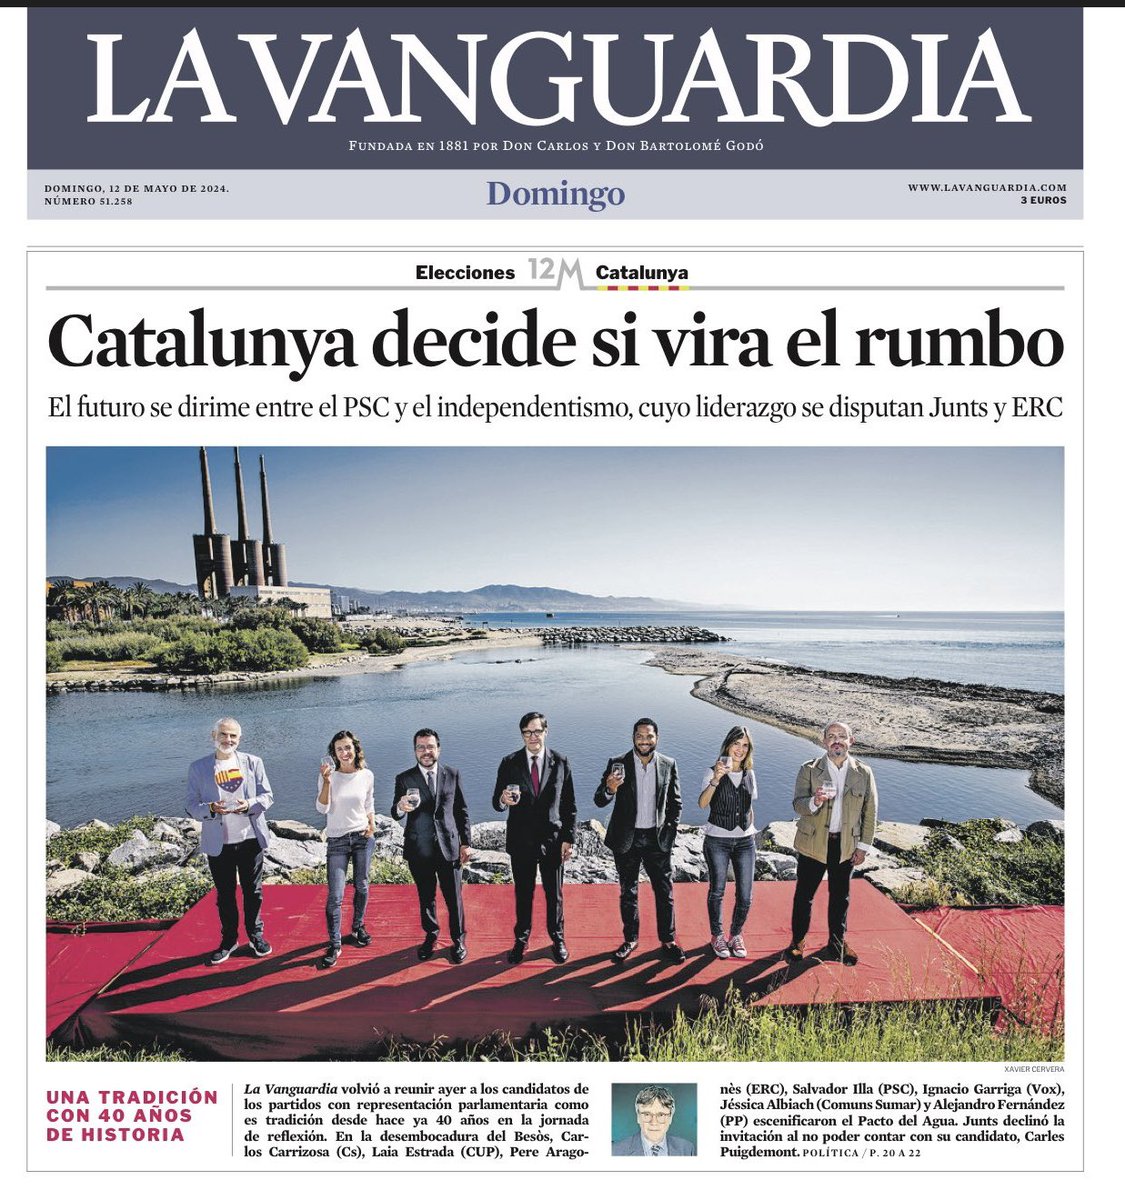 Aquesta foto sense el #president Puigdemont, i que no ho facin constar en el titular, fa molta vergonyeta. El president Aragonès no hauria d’haver acceptar ser-hi, per dignitat. És una manera de normalitzar la repressió. #PuigdemontPresident